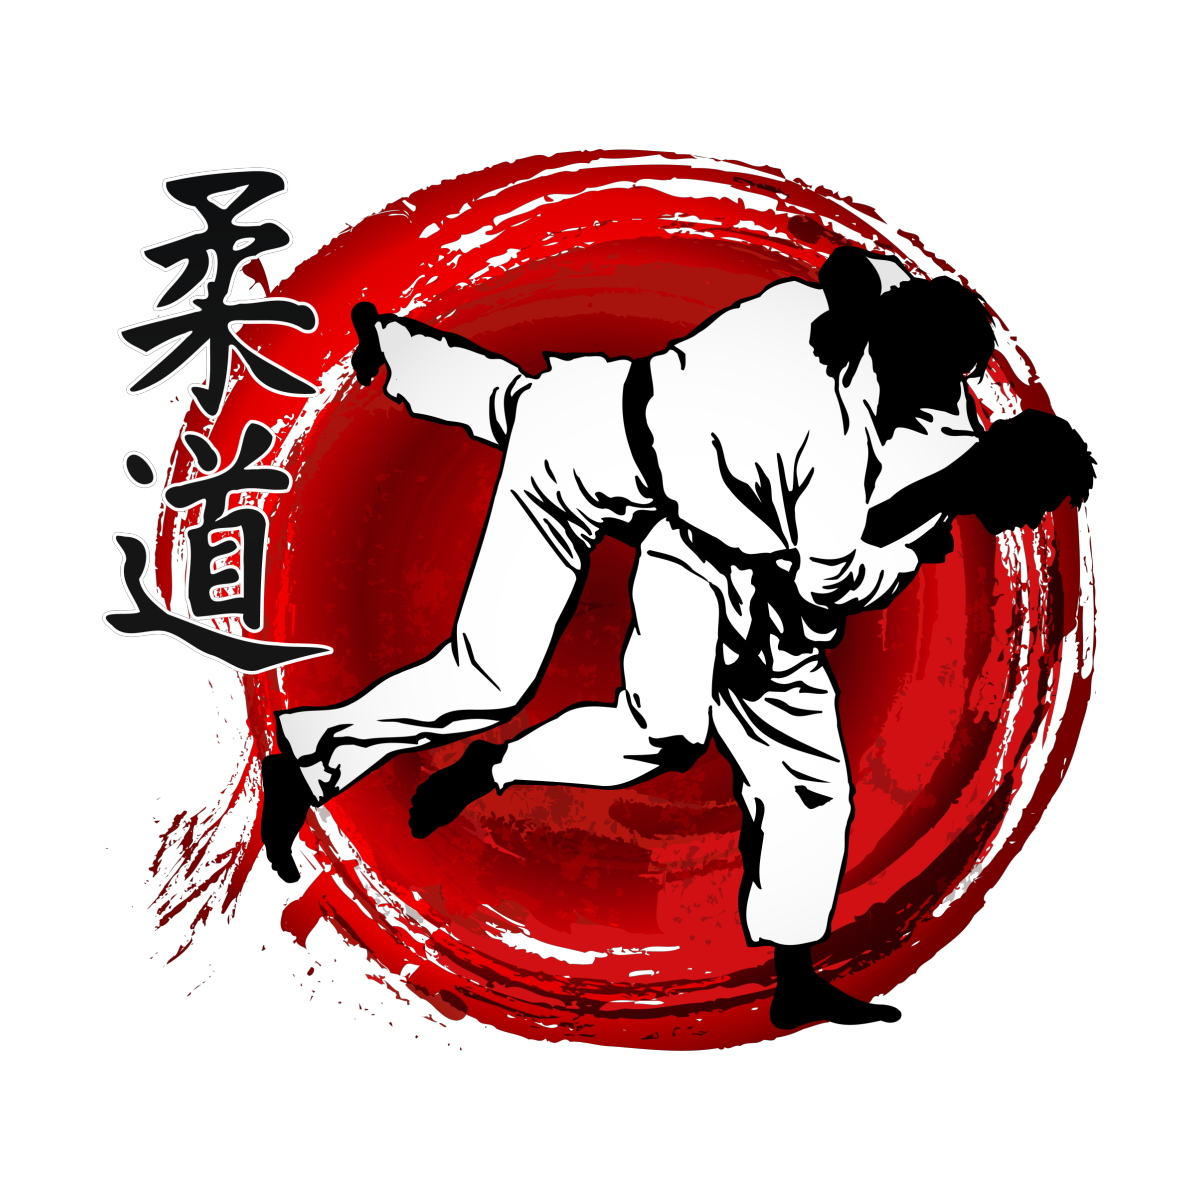 Джиу-джитсу японское дзюдзюцу. Джиу-джитсу боевые искусства Японии. Боевые искусства Японии дзюдо.